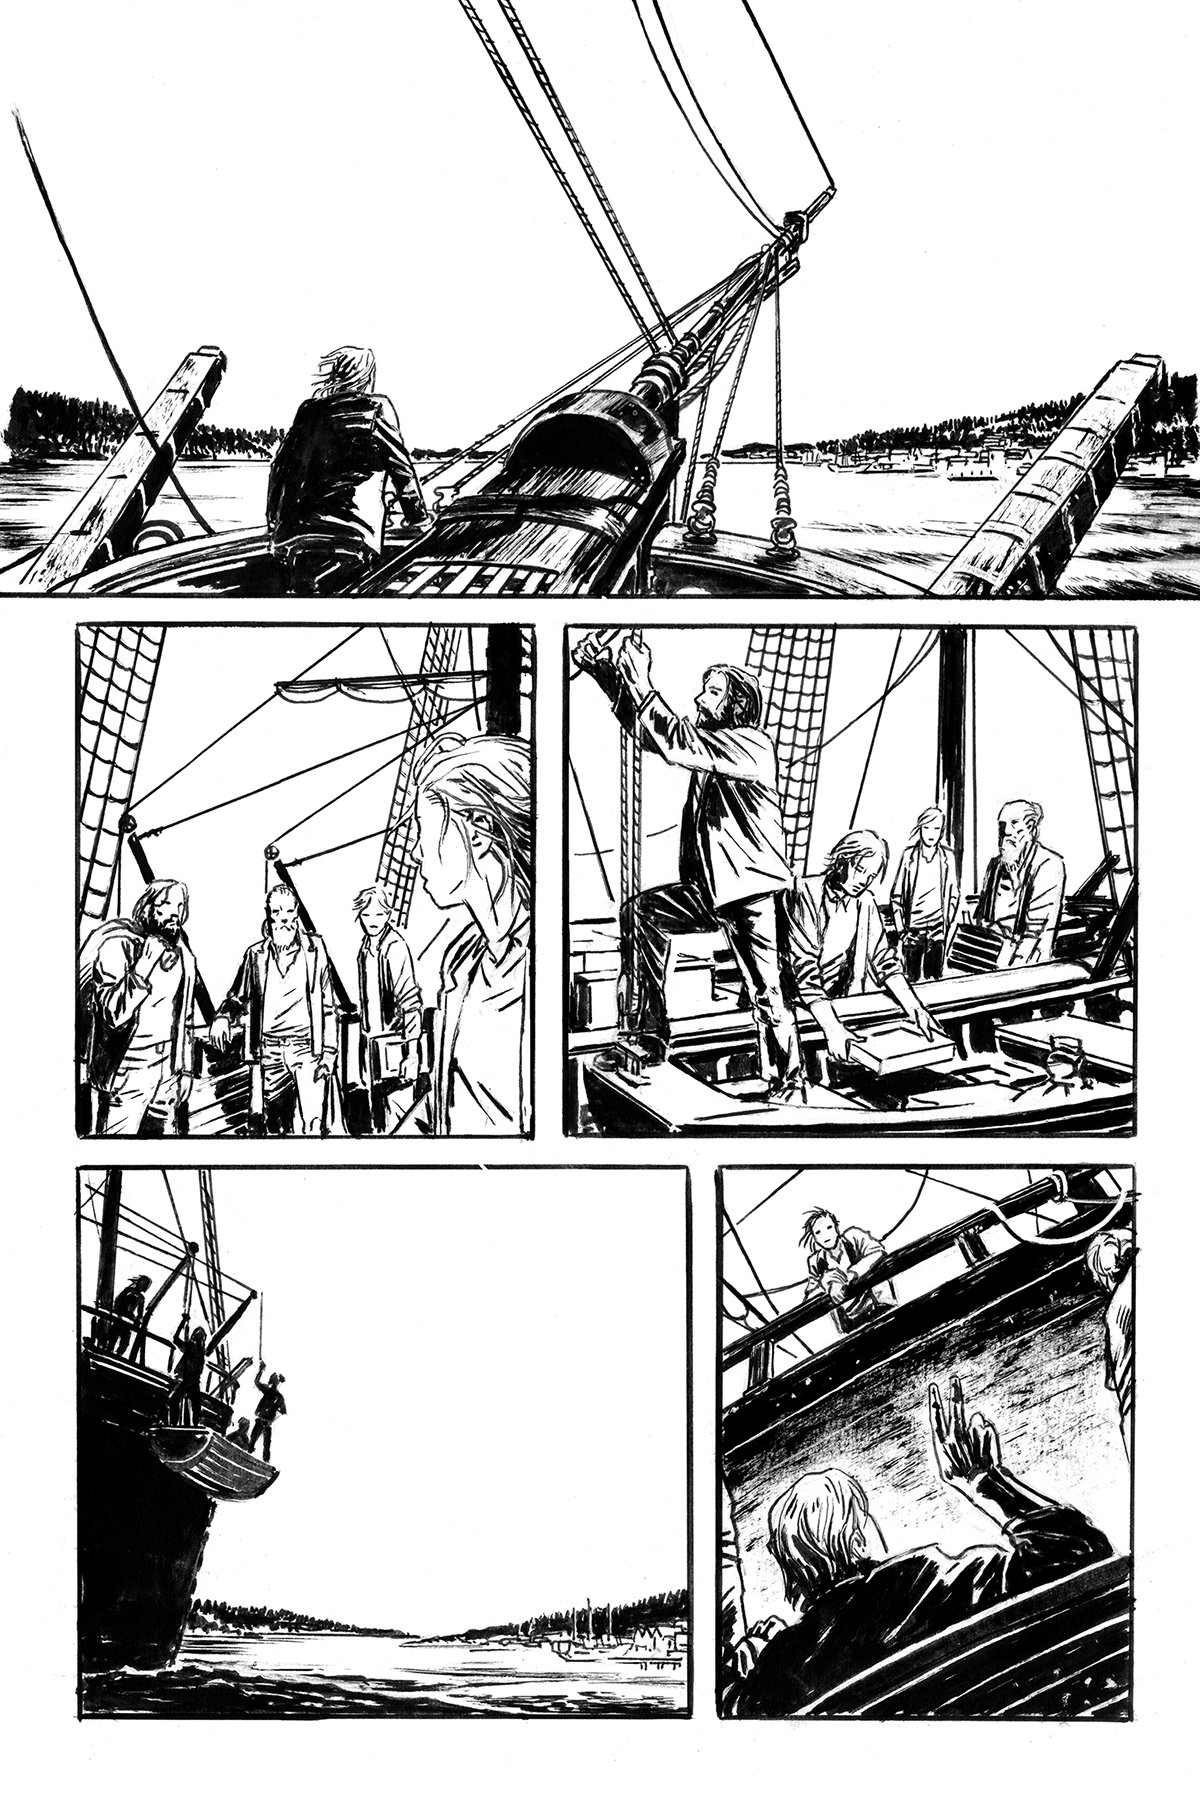 comics comic books sunset Cartooning  sailing Sailor seascape digital coloring